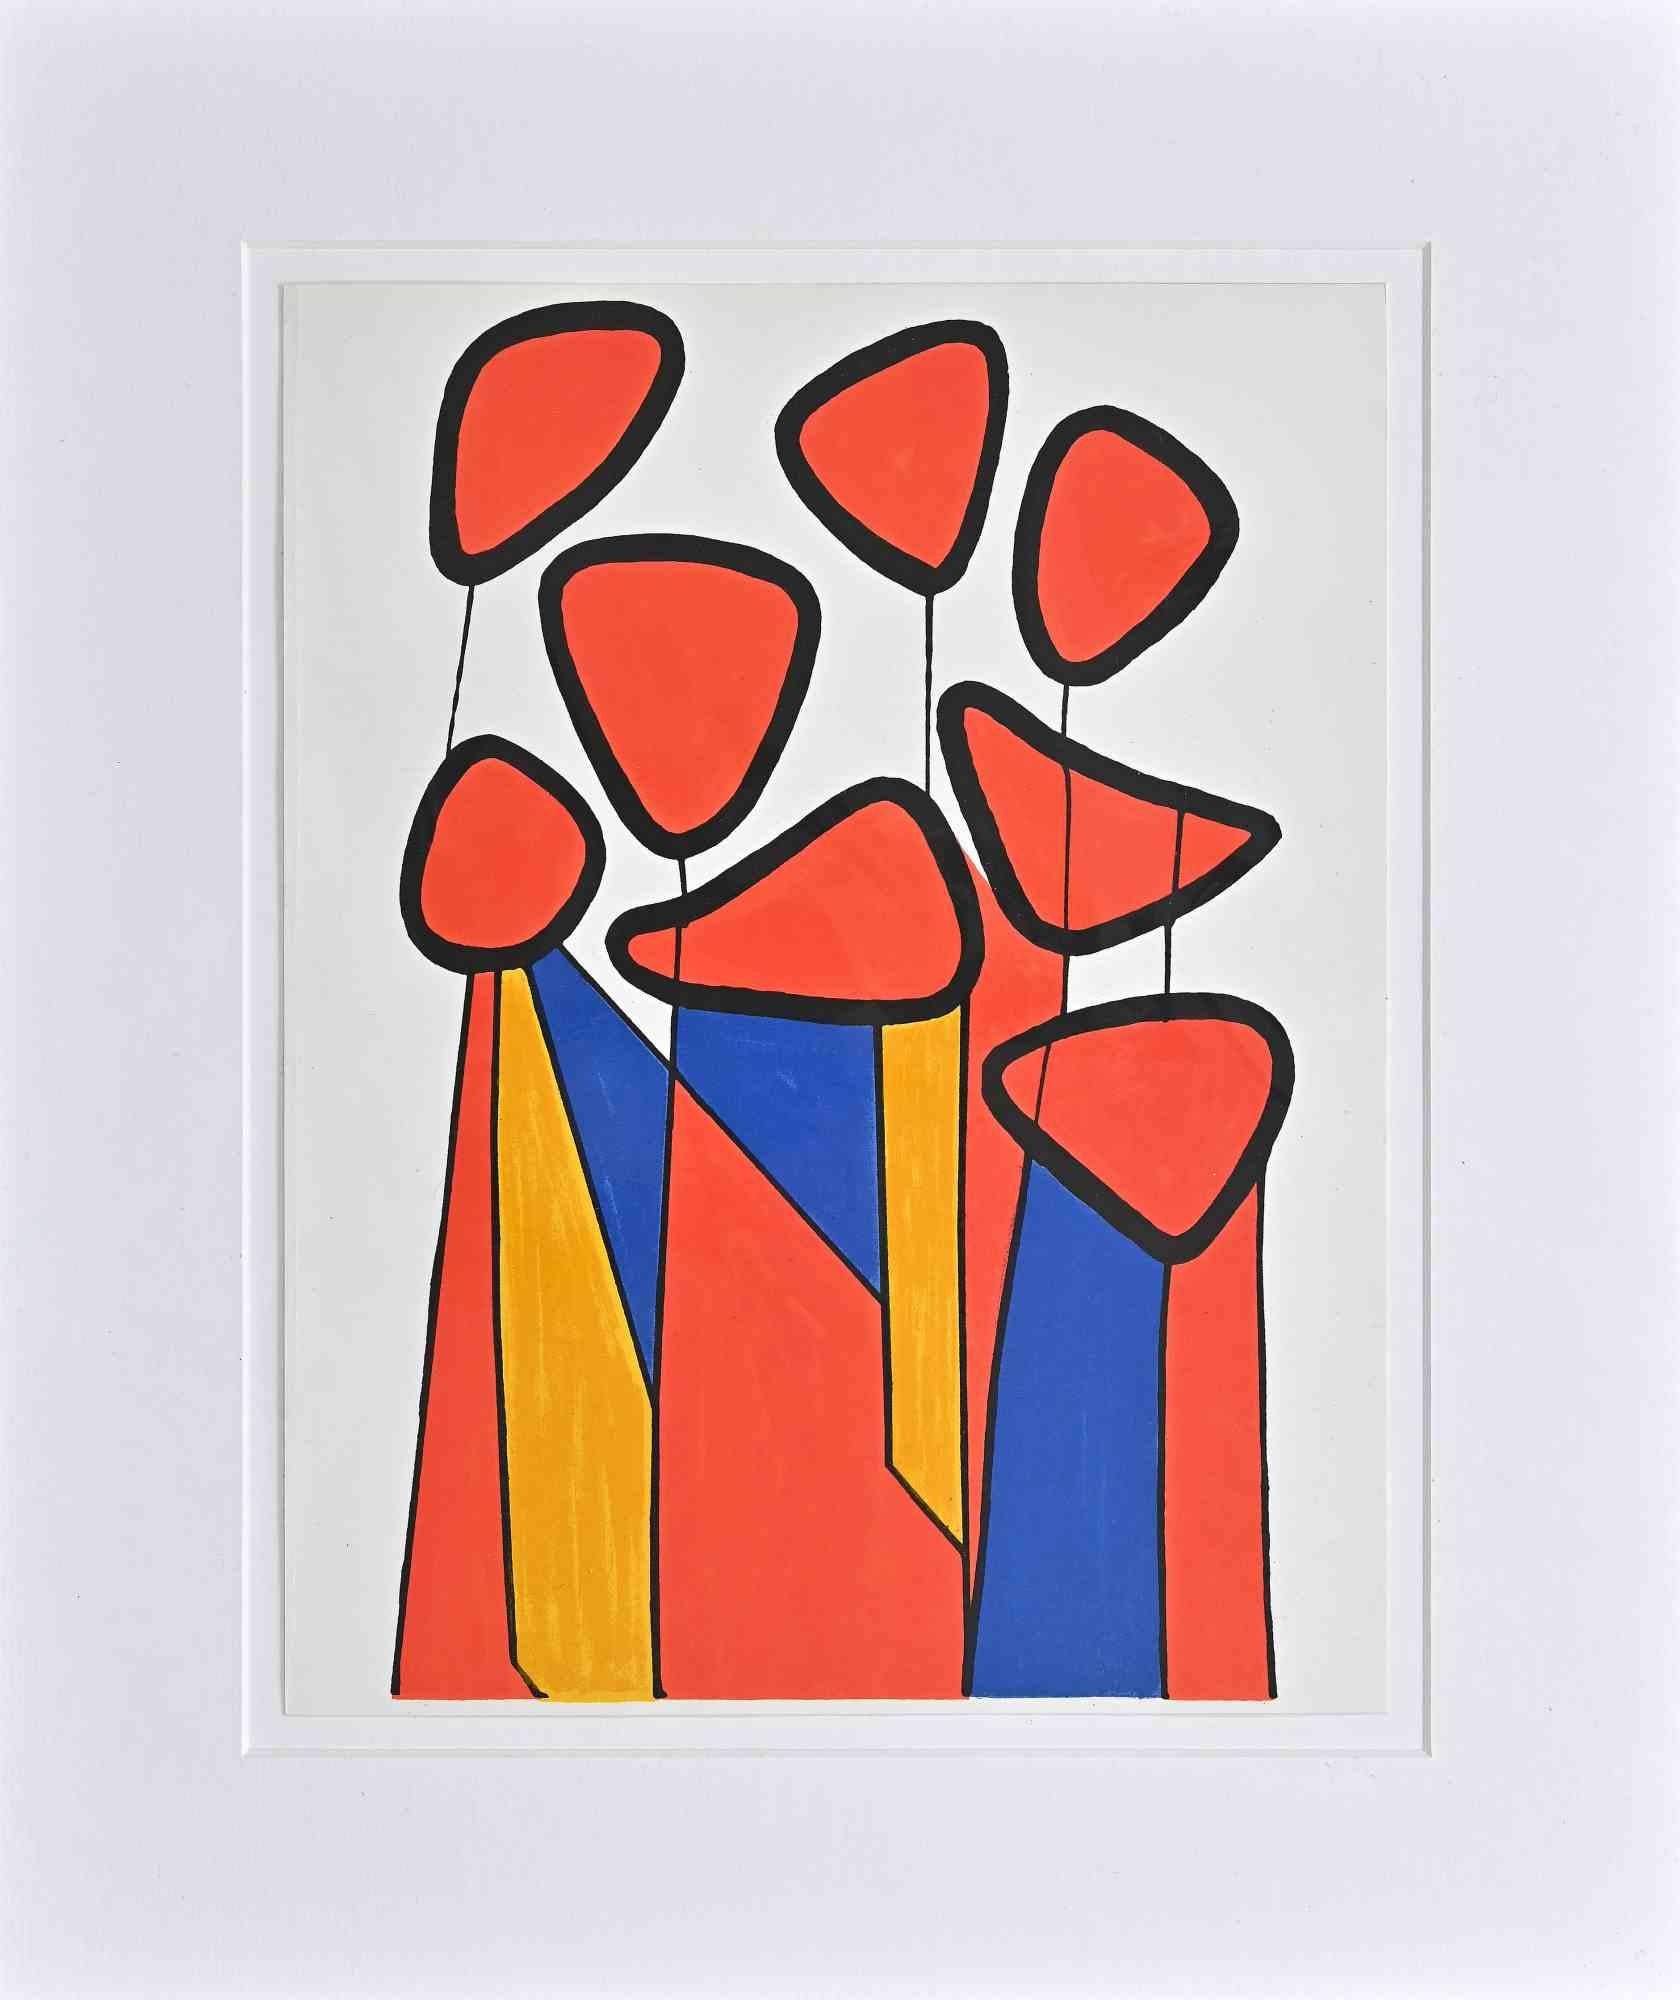 Squash-Blumen -  Lithographie nach Alexander Calder - 1972